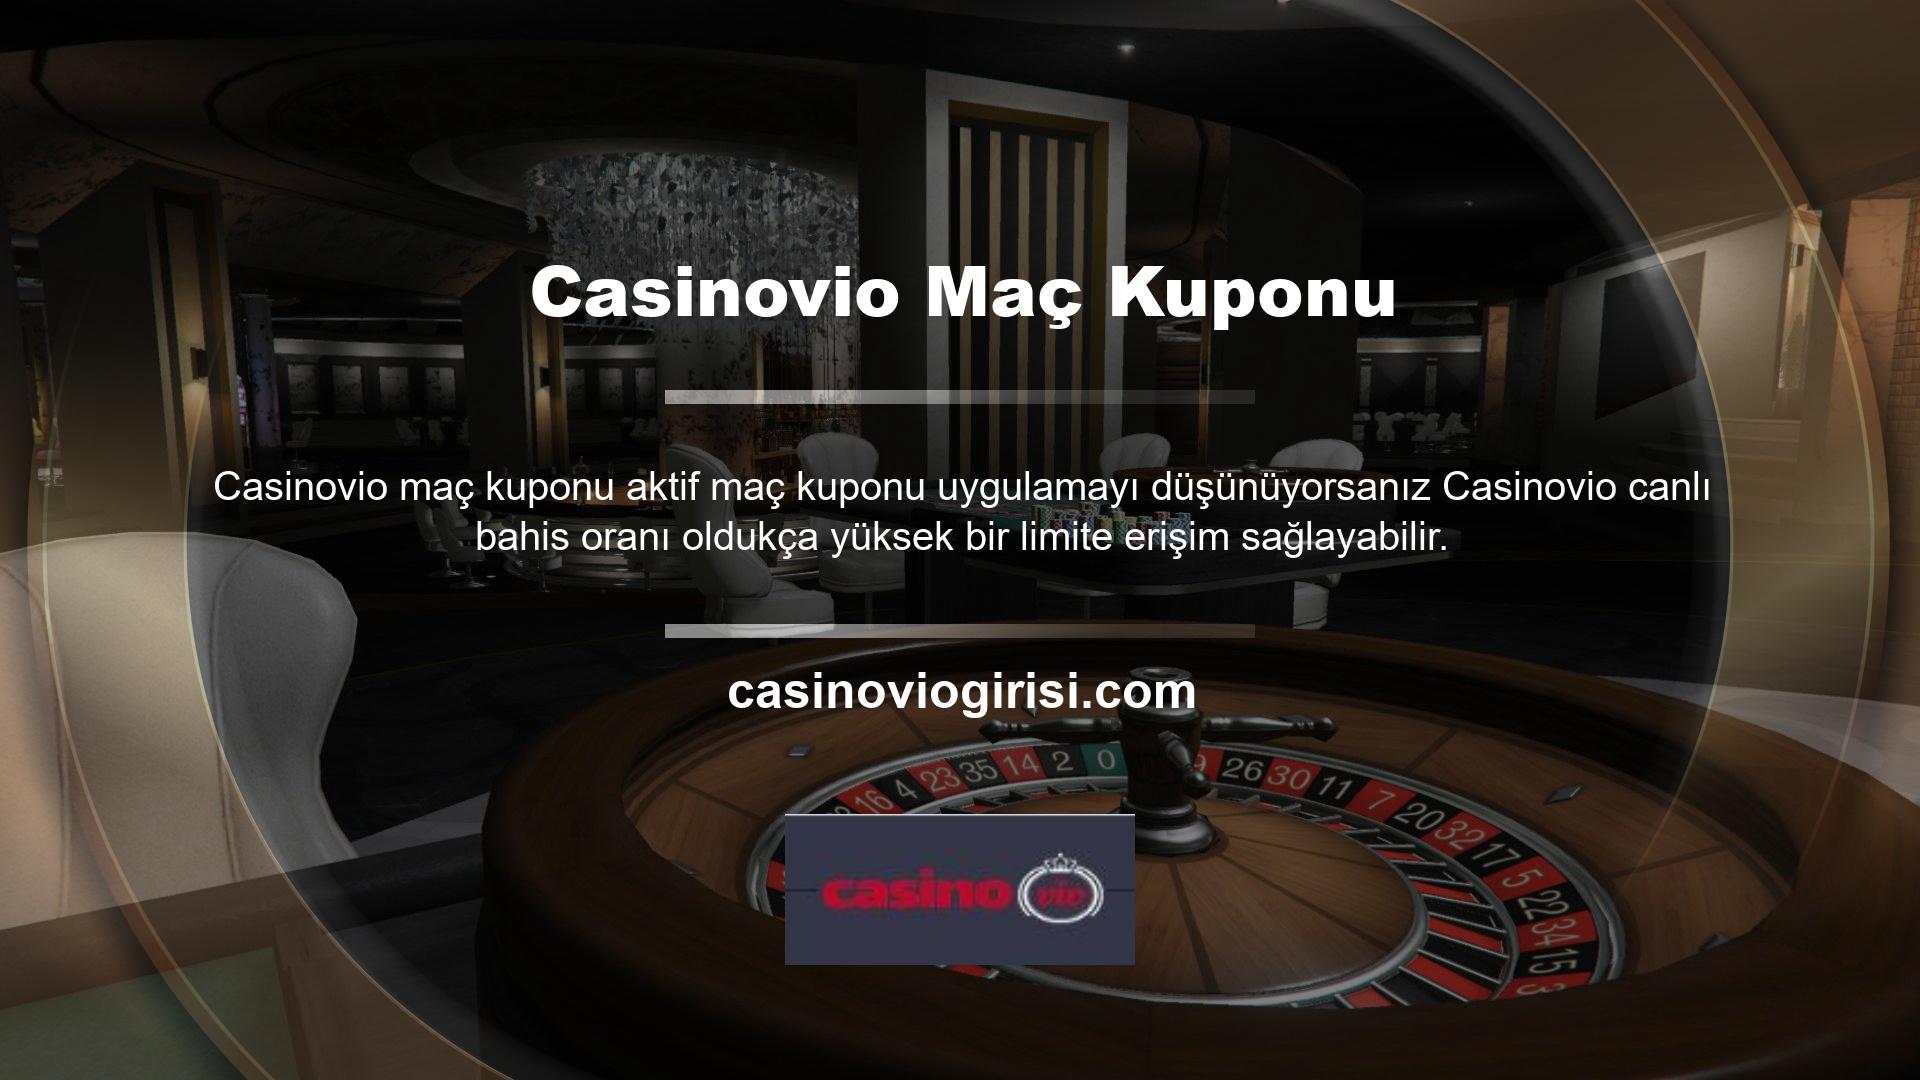 Casinovio bonus bahis koşulları hakkında bilgi sahibi olmak, canlı bahis sitelerinden daha kolay yararlanmanızı sağlar